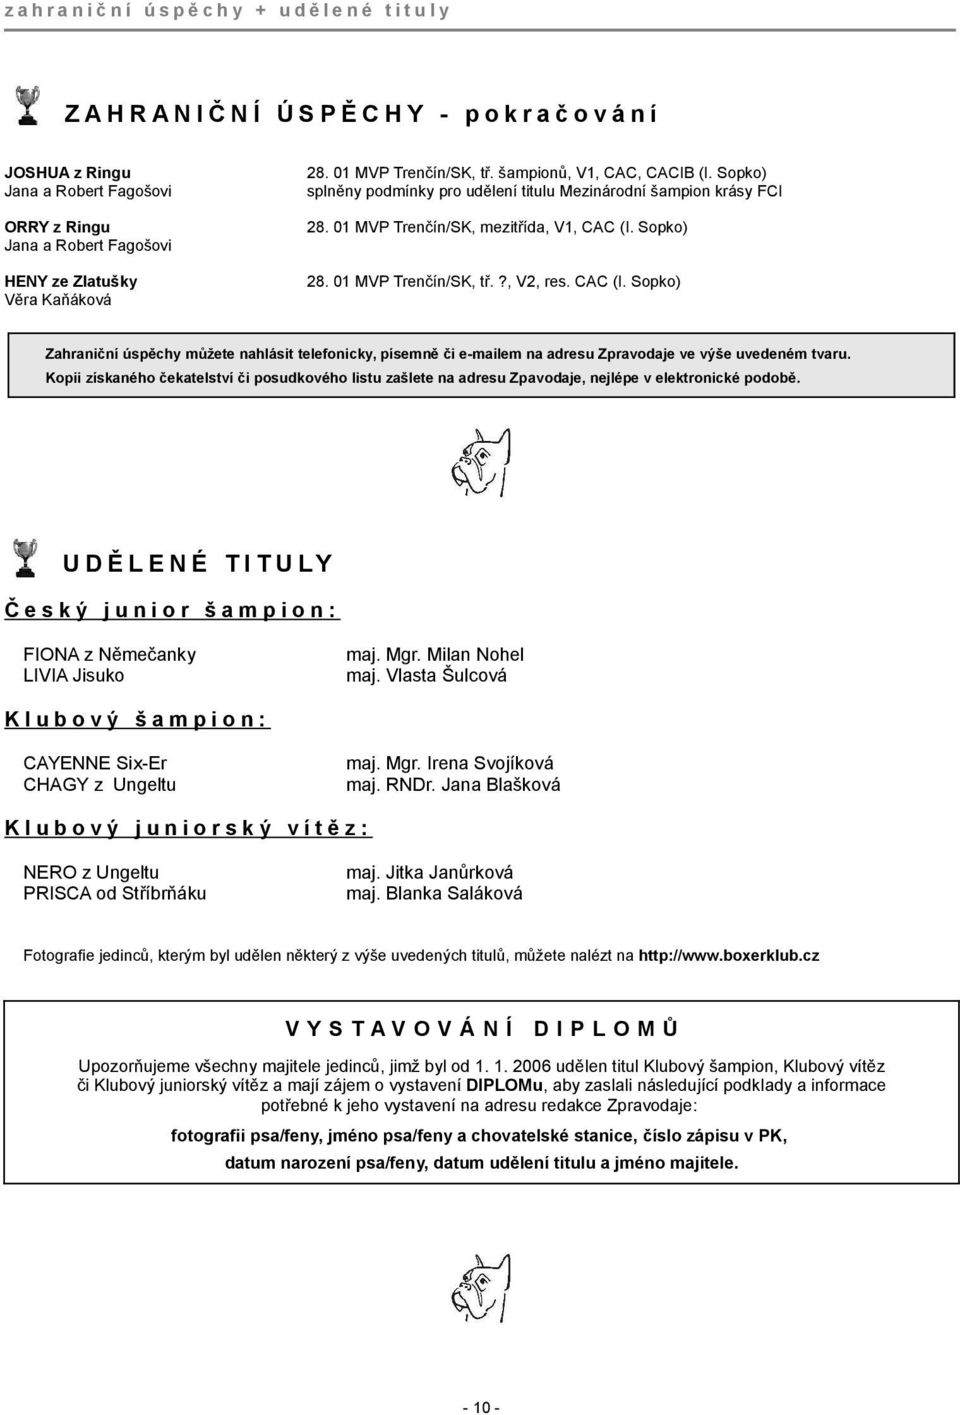 Sopko) 28. 01 MVP Trenčín/SK, tř.?, V2, res. CAC (I. Sopko) Zahraniční úspěchy můžete nahlásit telefonicky, písemně či e-mailem na adresu Zpravodaje ve výše uvedeném tvaru.